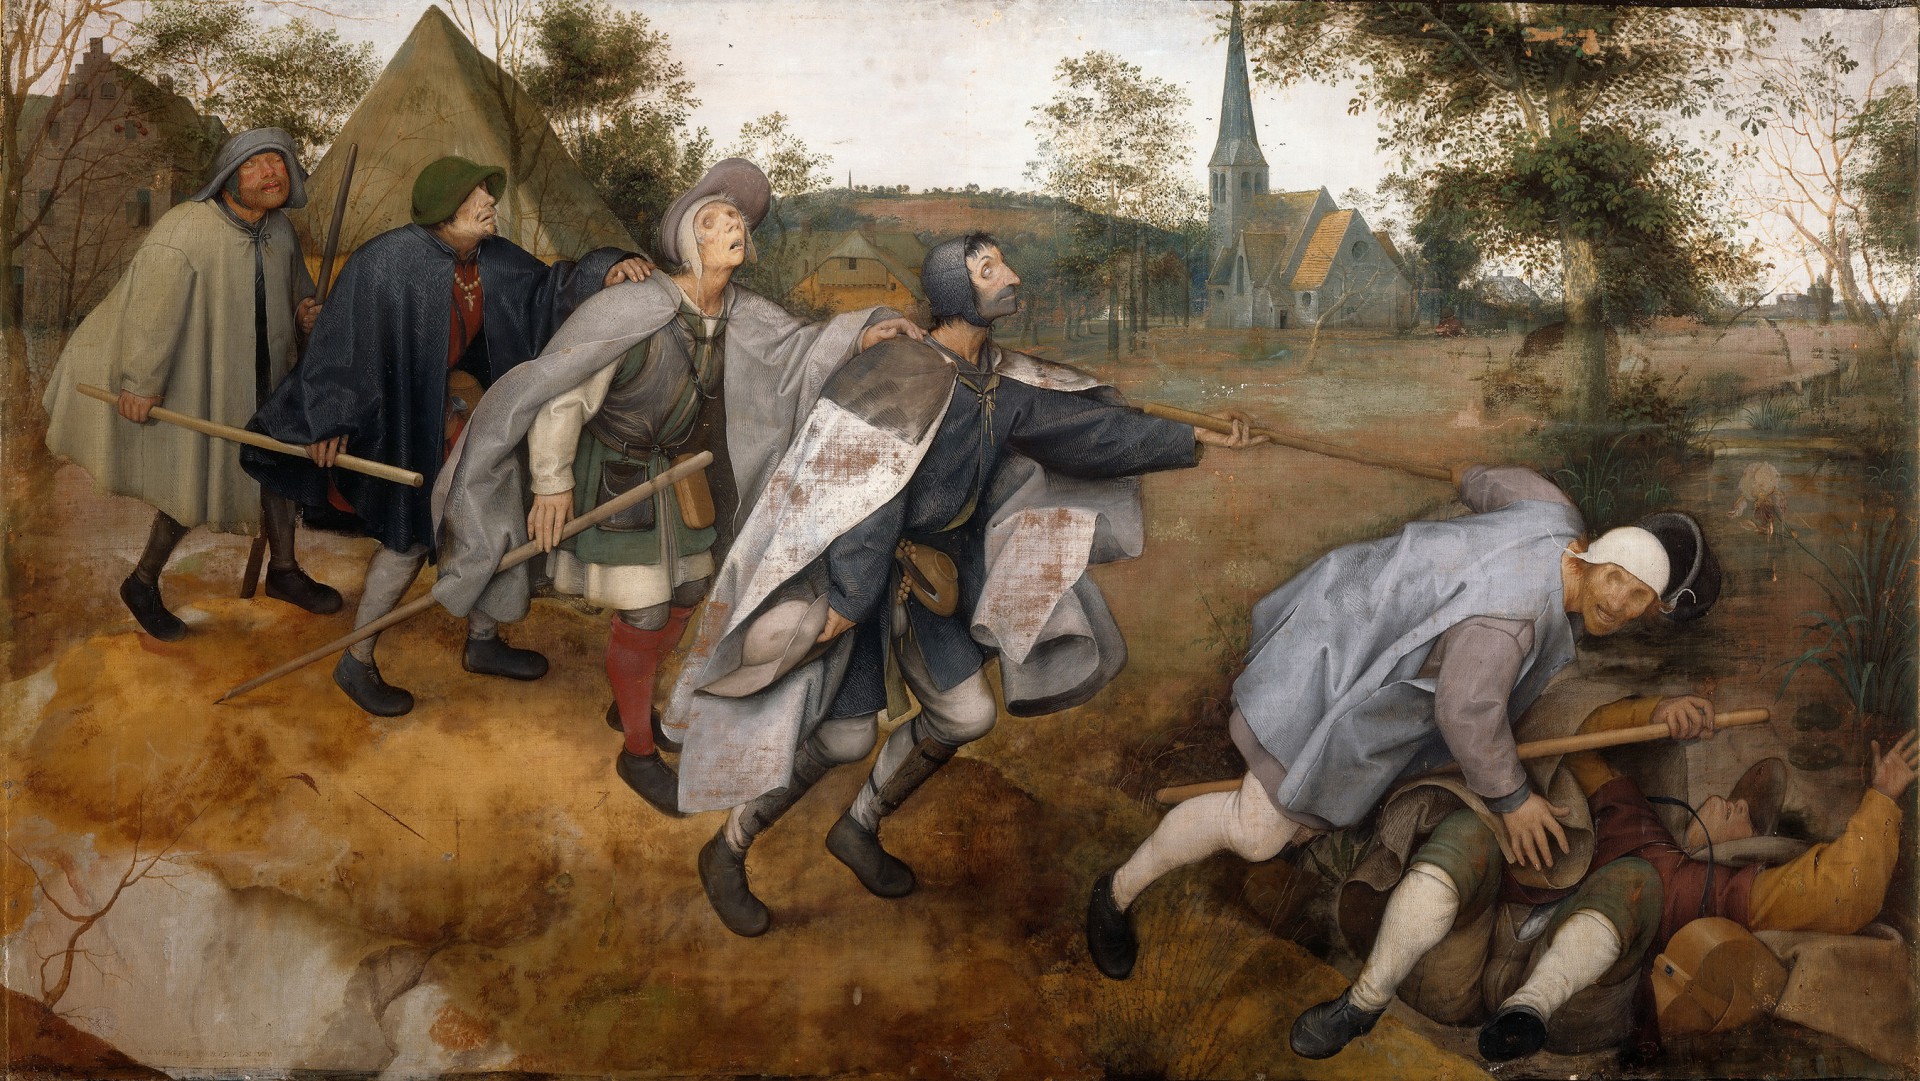 Картина Питера Брейгеля «Притча о слепых» (Голландия, 1568 год). Сюжет картины основан на библейской притче, суть которой: «Если слепой ведёт слепого, то оба они упадут в яму».